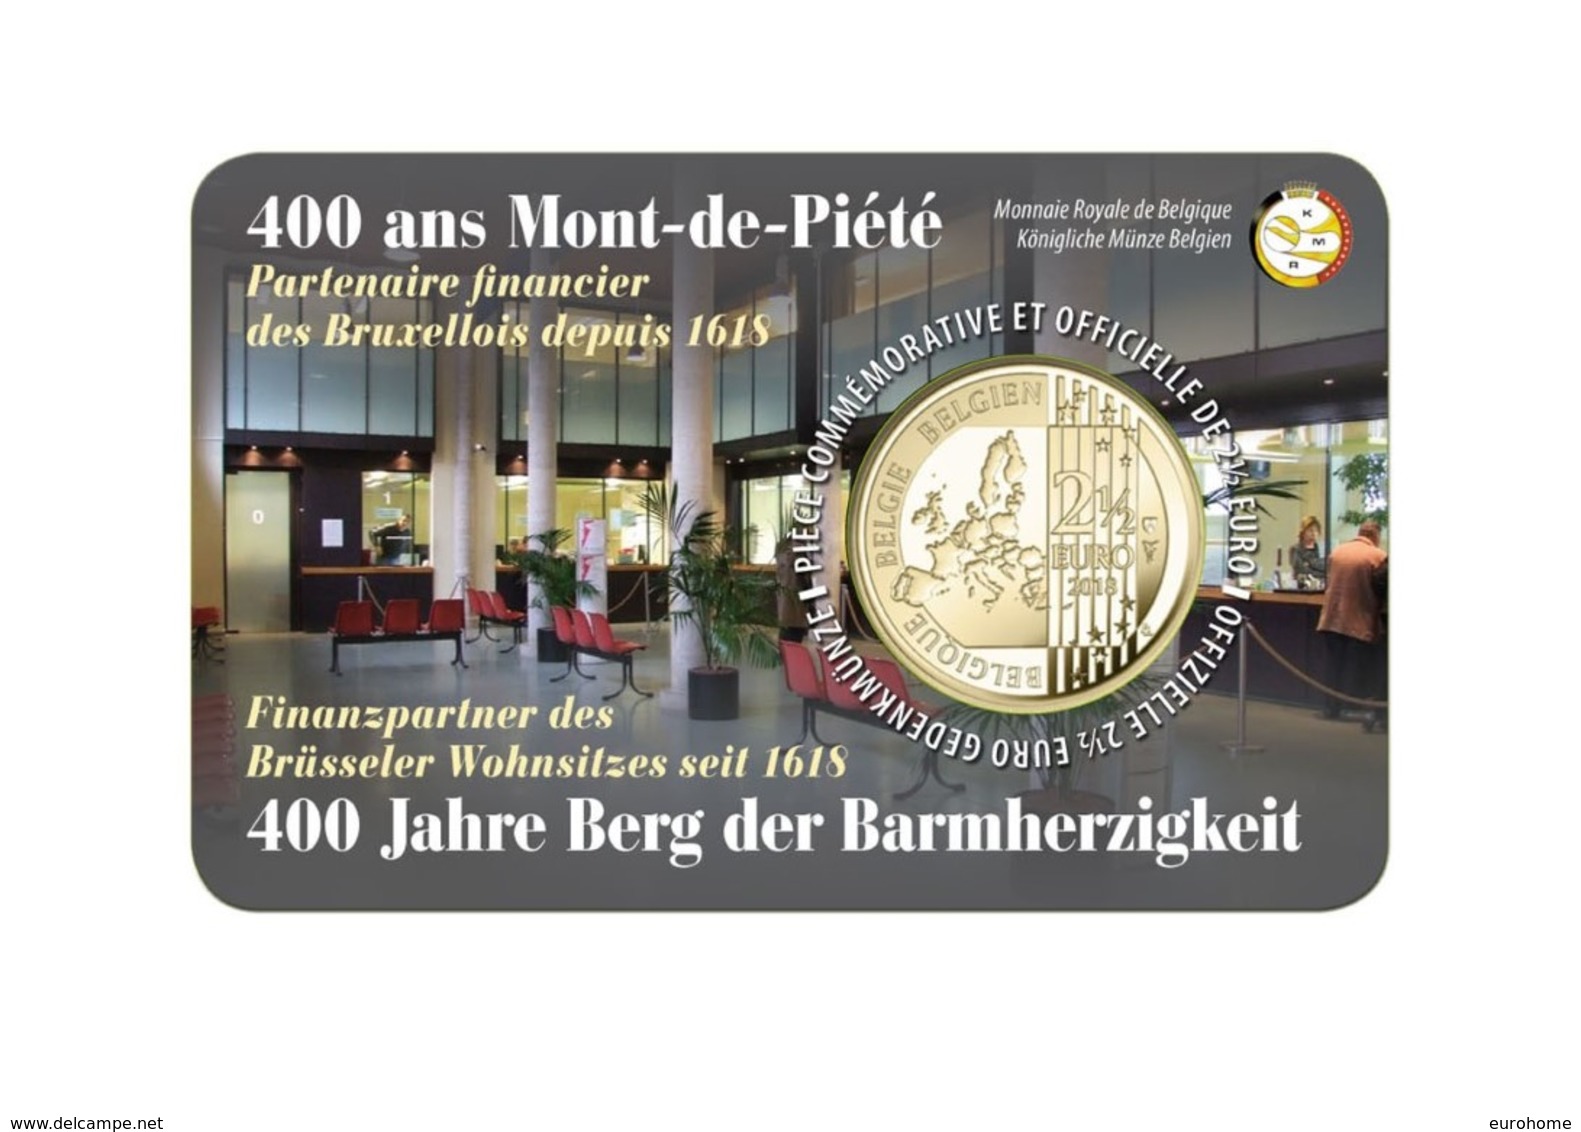 Belgie 2018   2,50 Euro  400 Ans Mont-de-Piété     Version (texte) Français Sur Le Coincart   Extreme Rare !!! - België